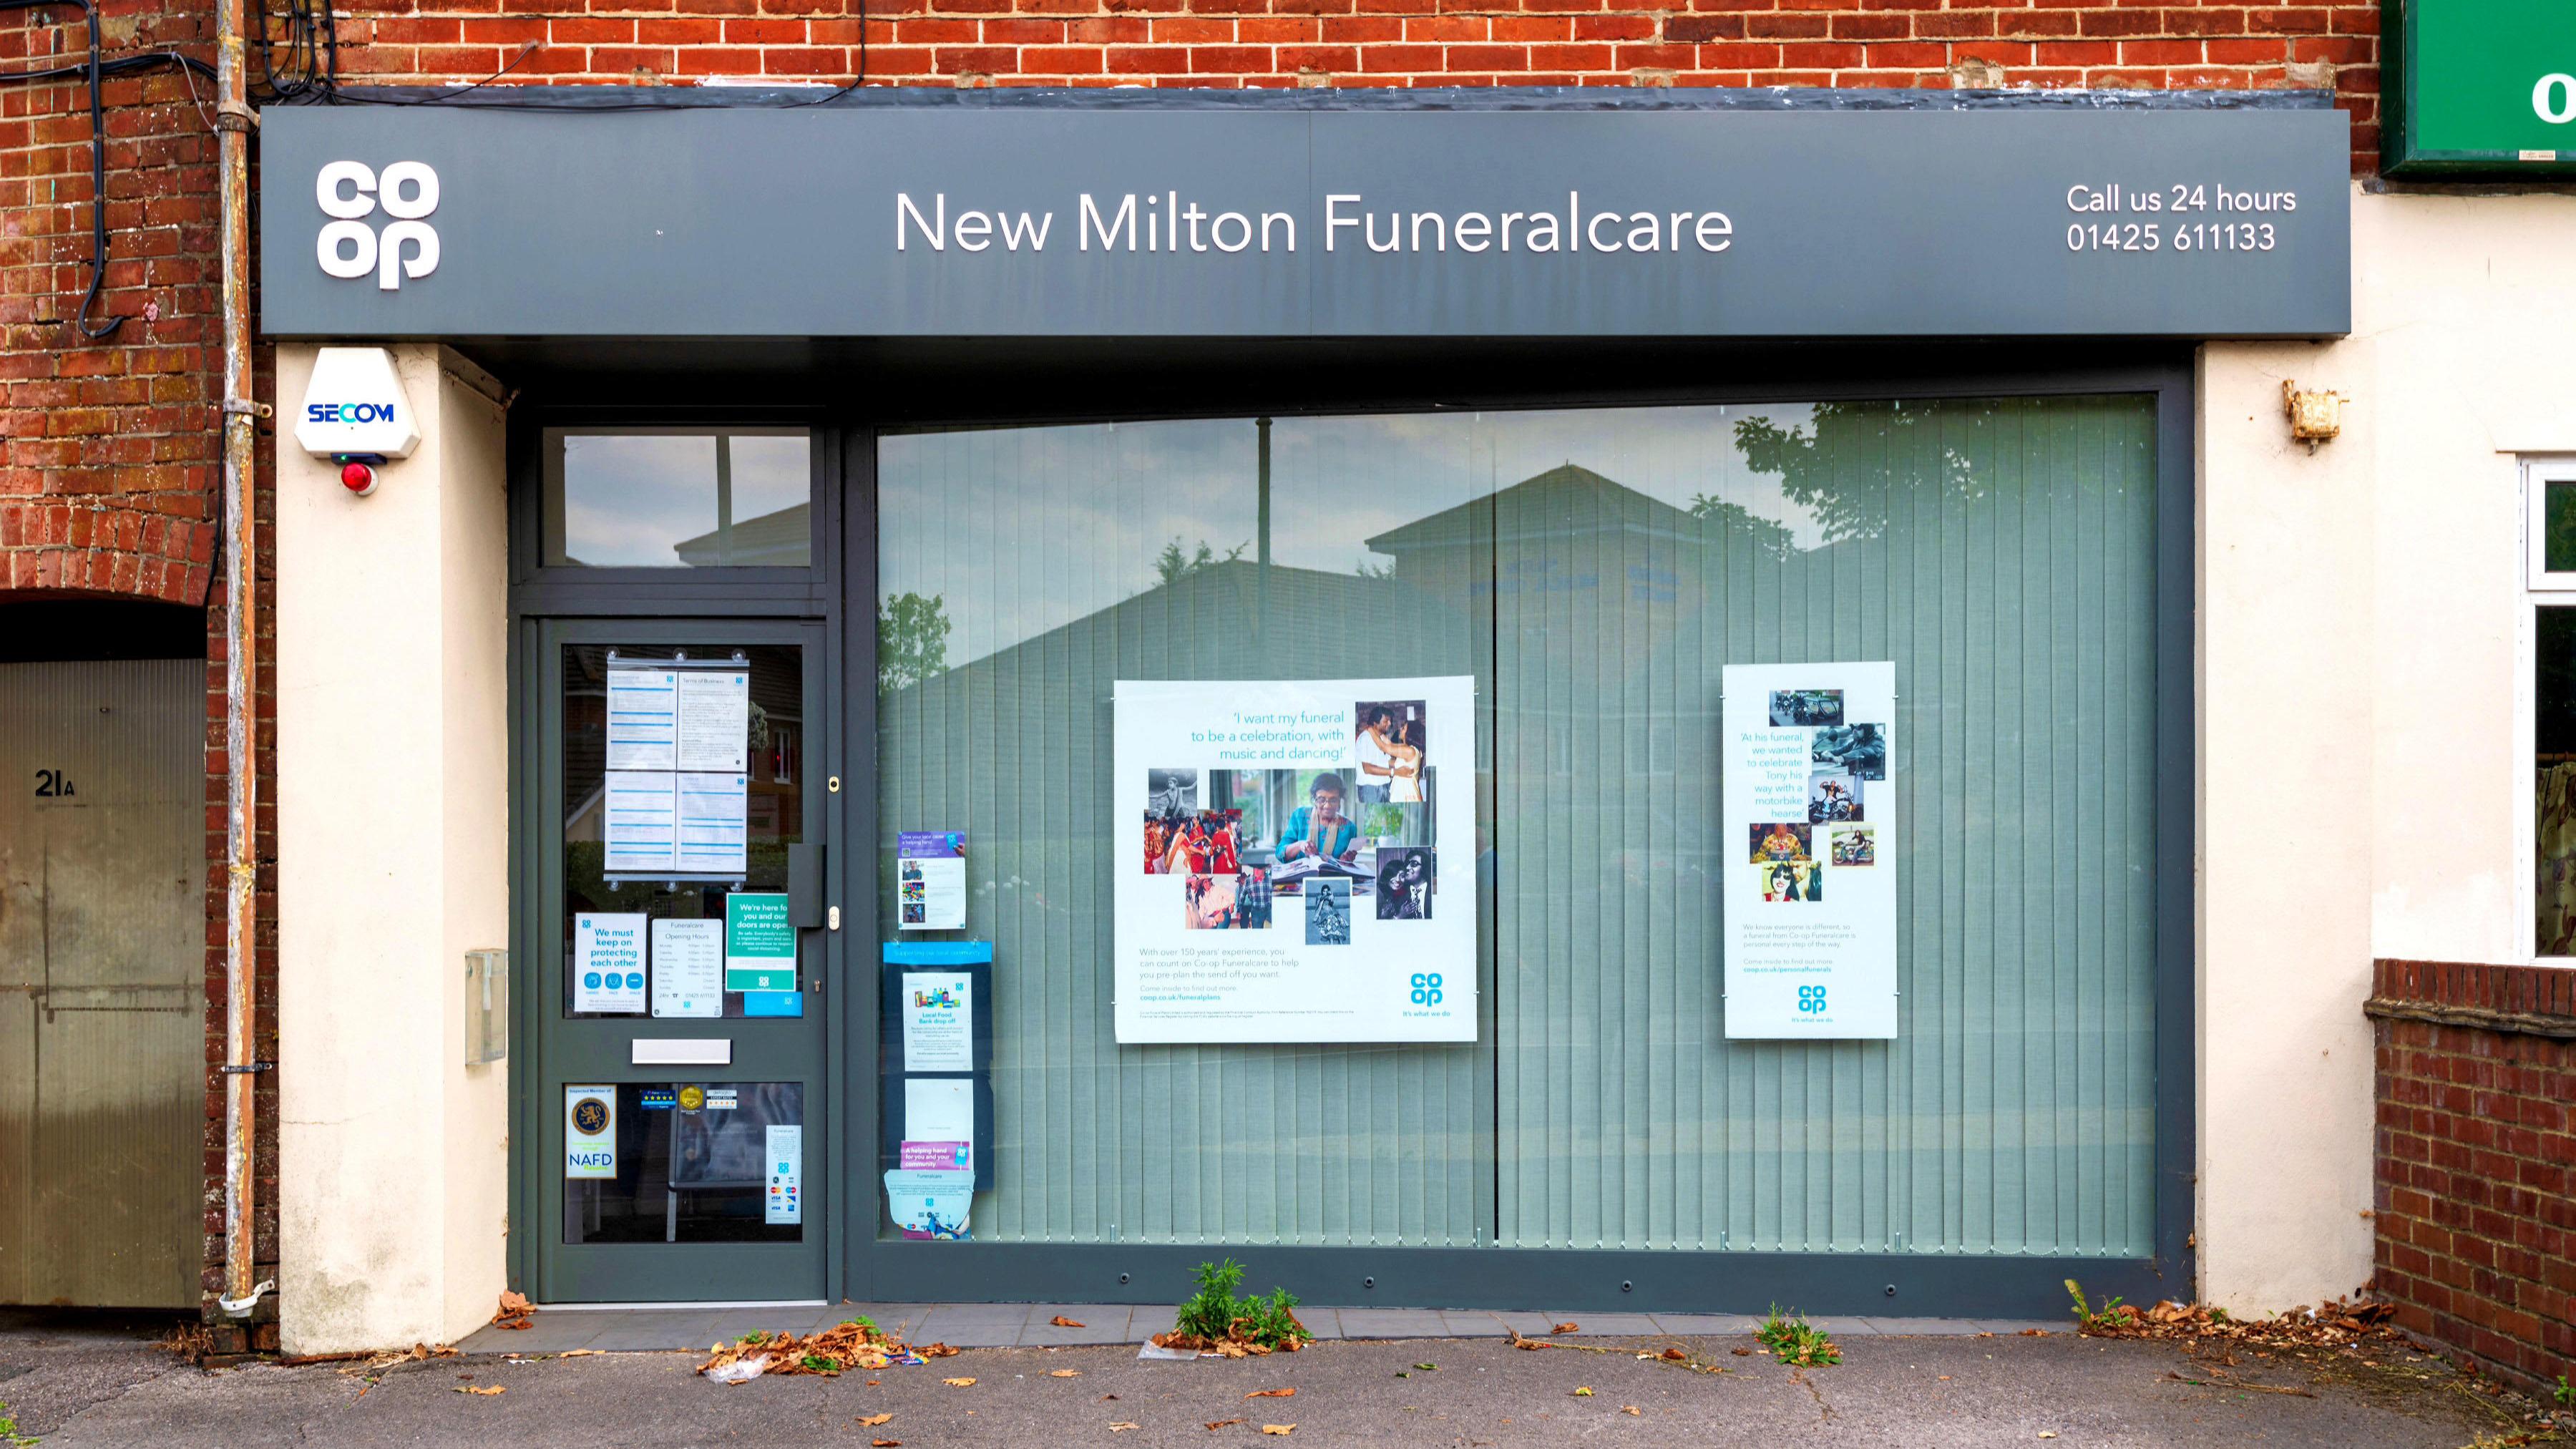 New Milton Funeralcare New Milton Funeralcare New Milton 01425 611133